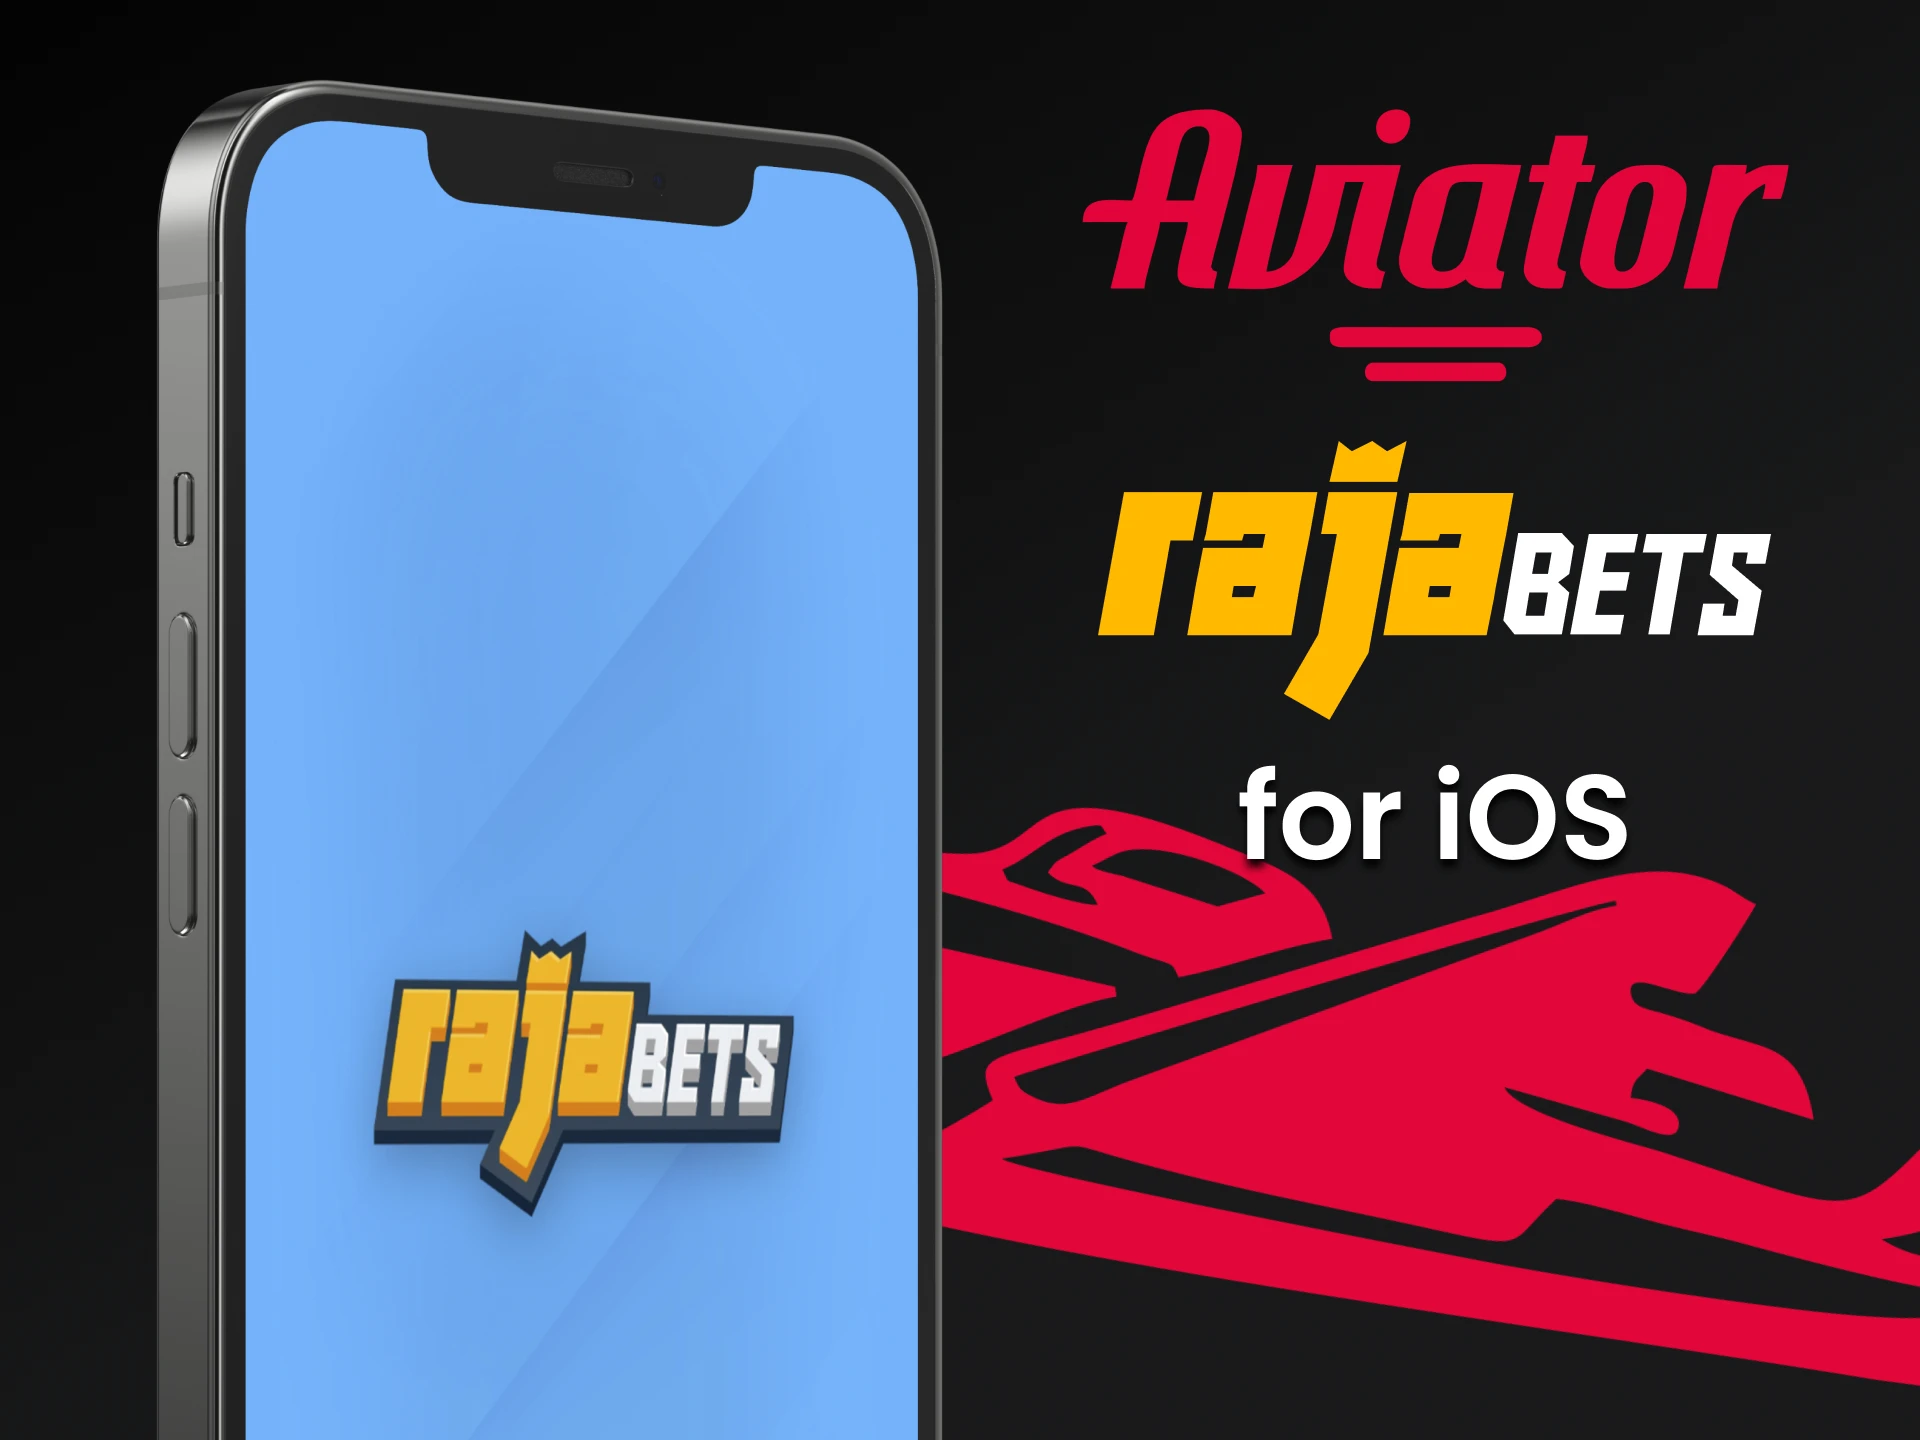 Instale o aplicativo para iOS do Rajabets for Aviator.